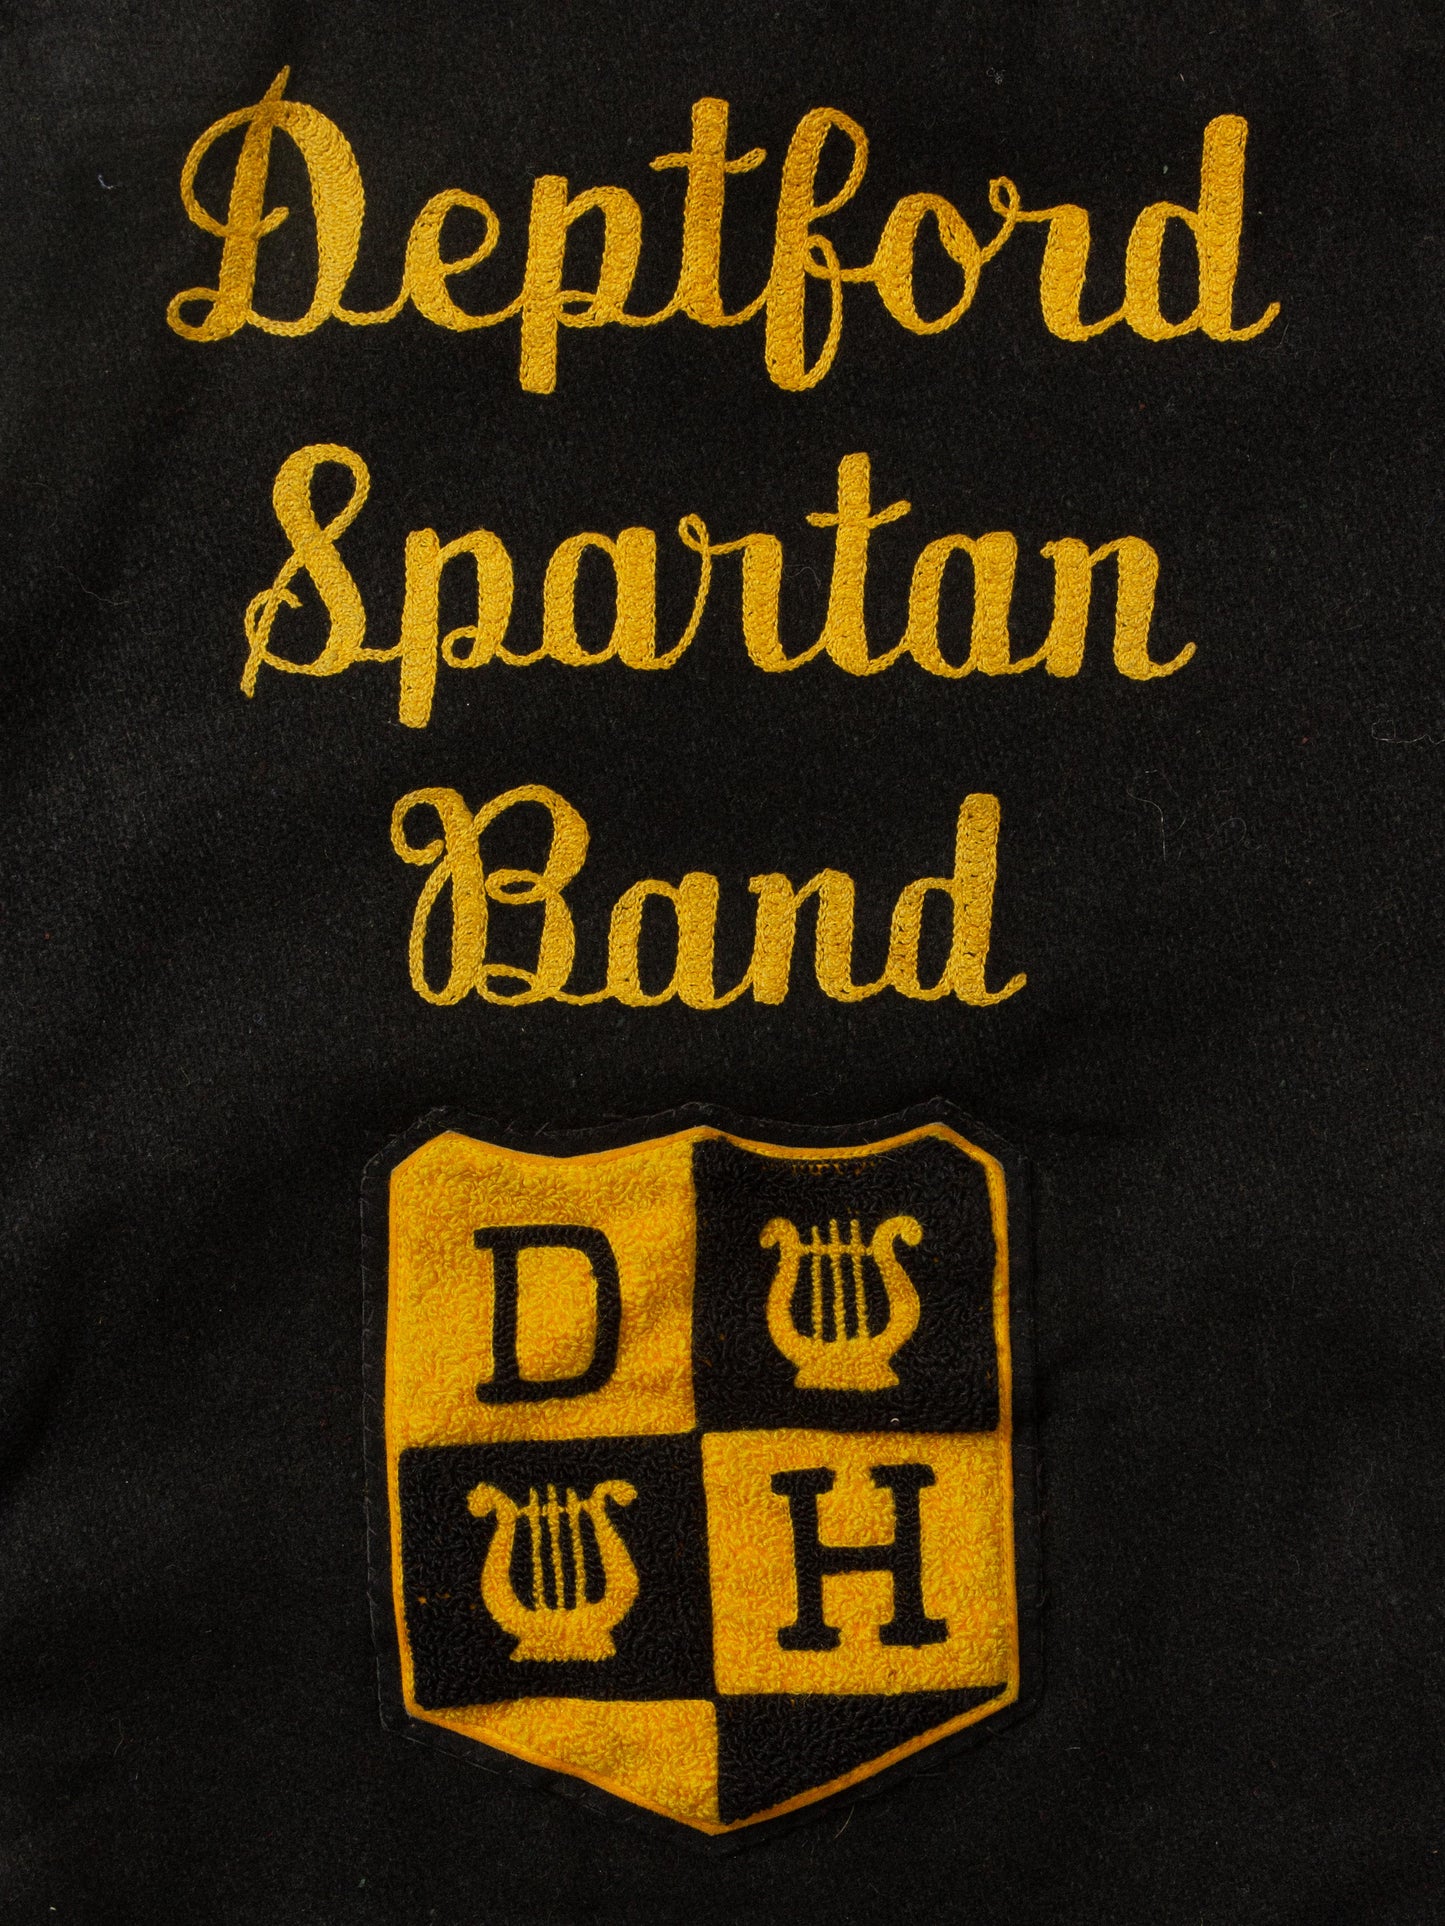 Vtg 1970s Deptford Spartan Band Jacket (M)